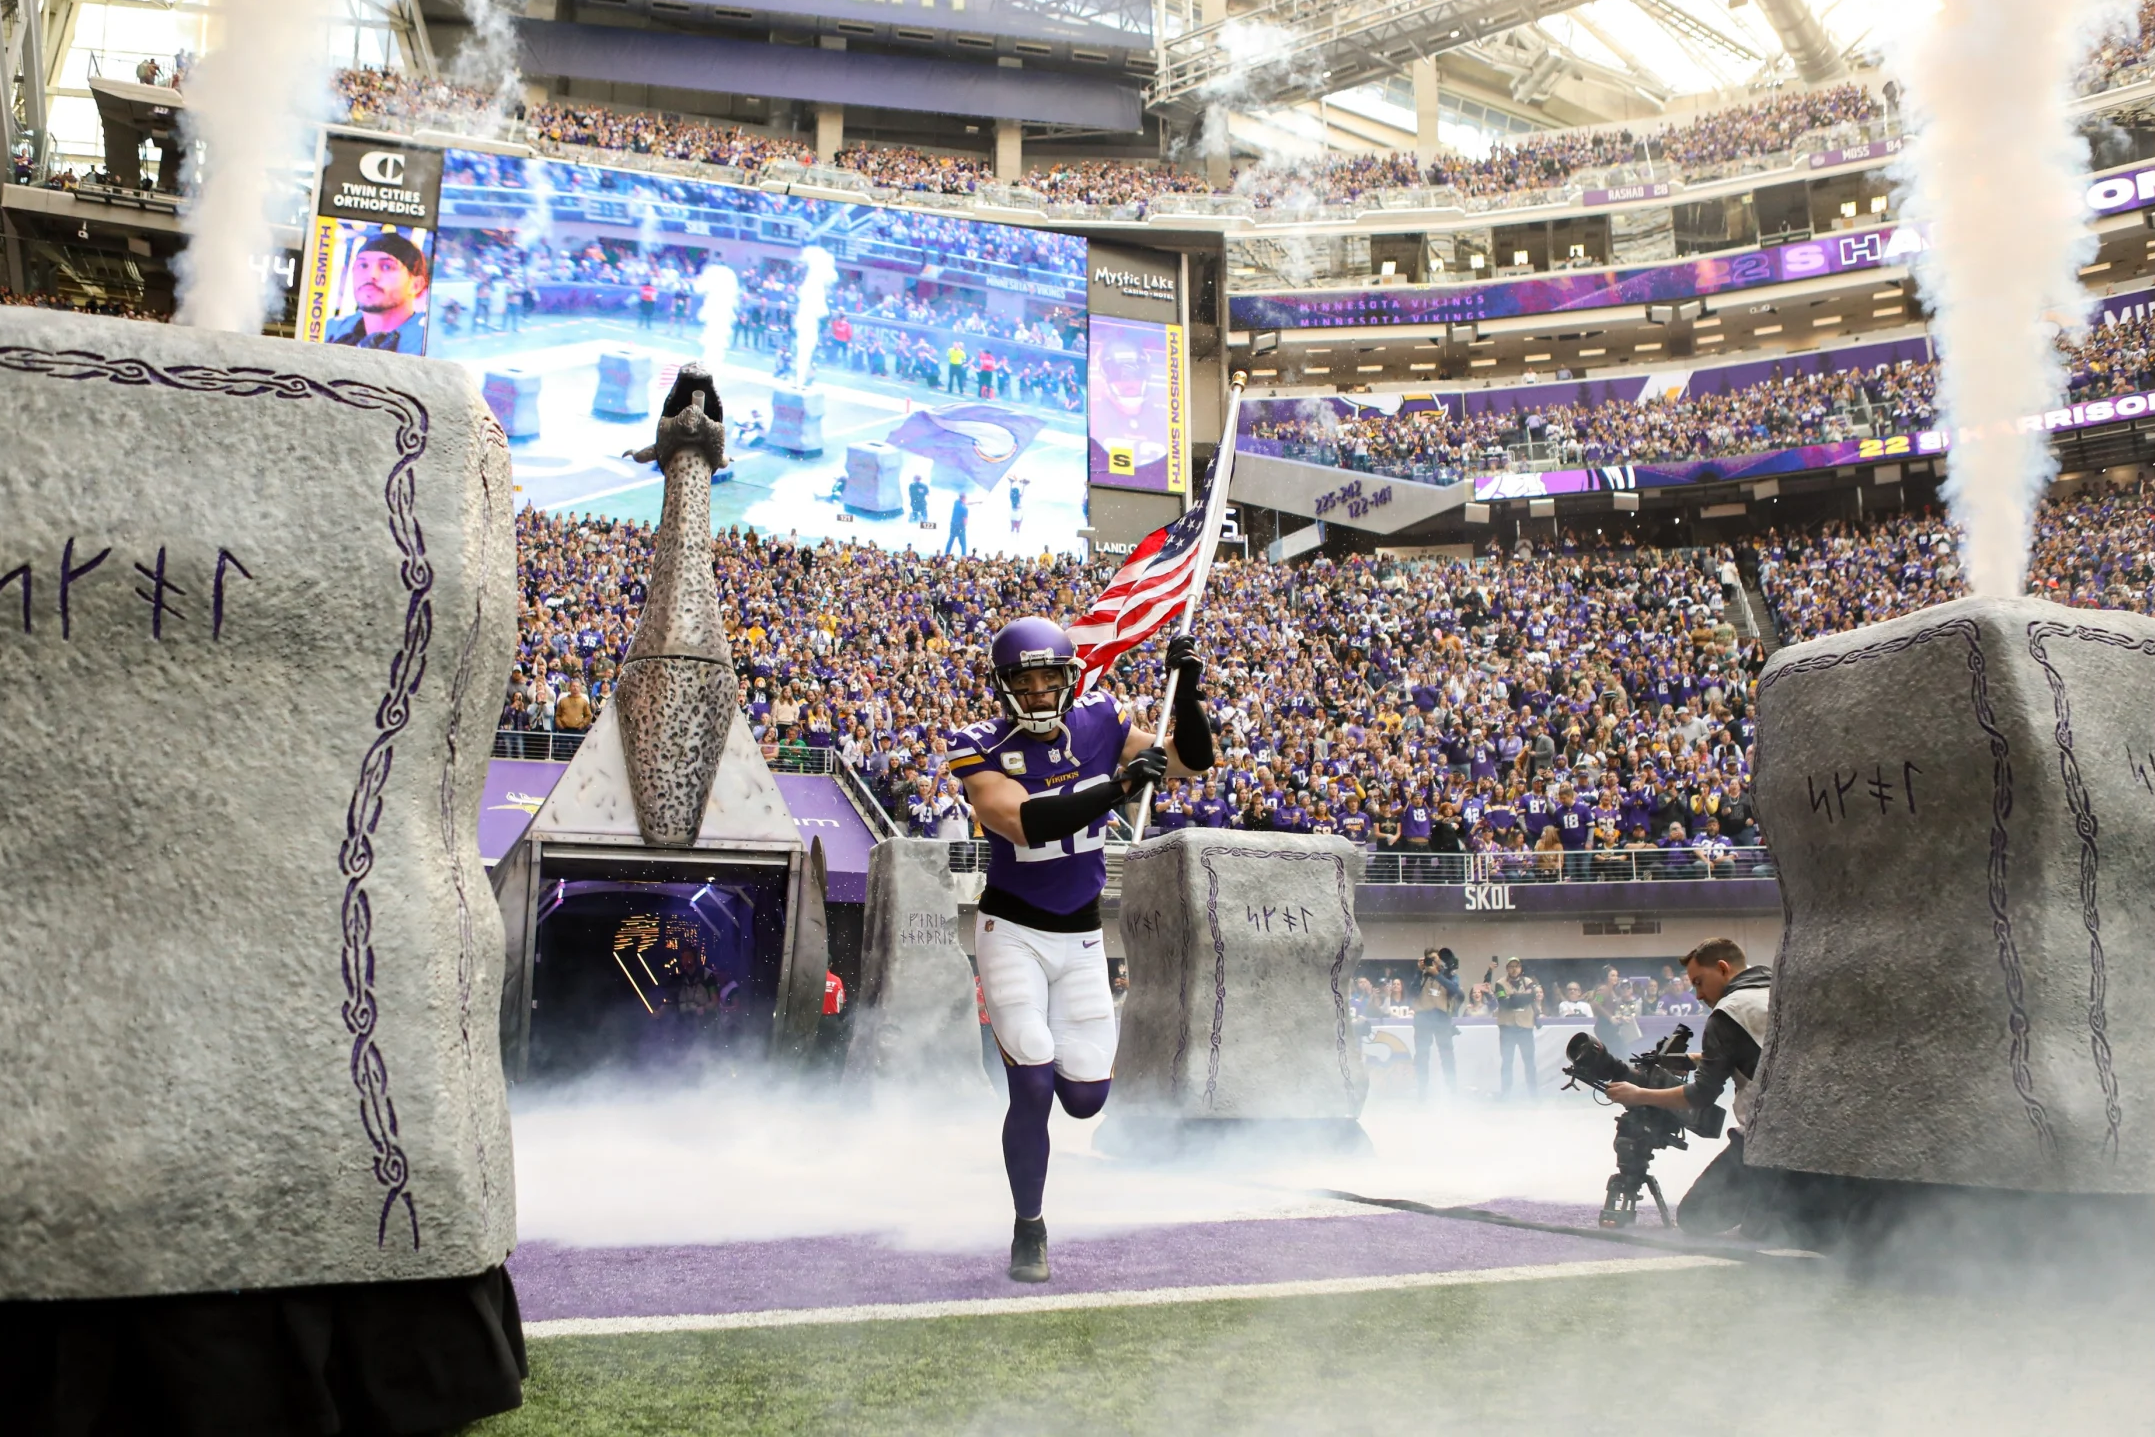 Minnesota Vikings stadium score screen